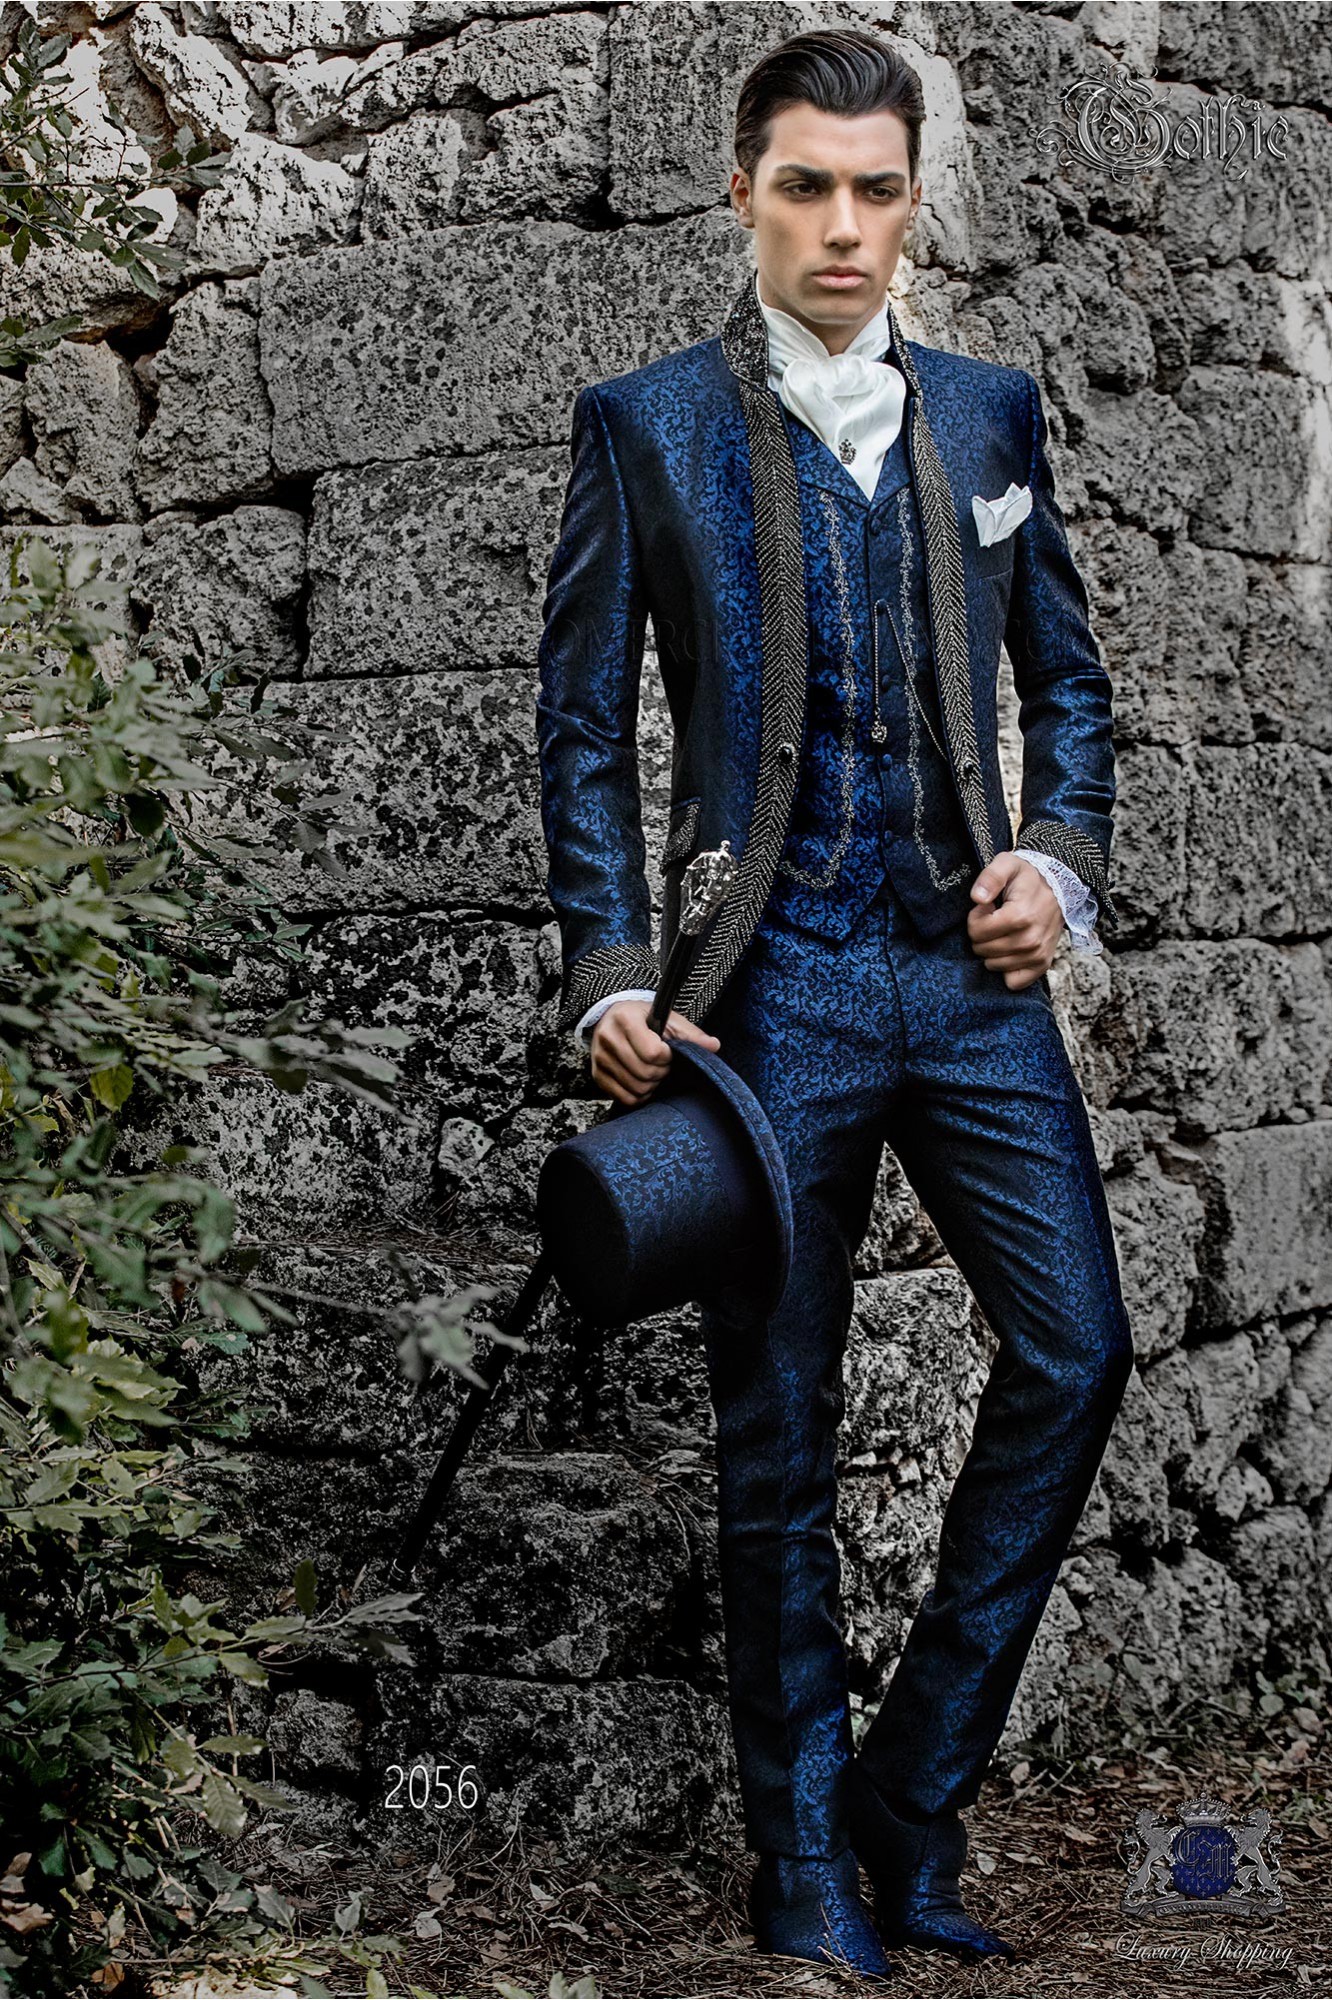 levita vintage cuello mao en tejido jacquard azul con pedrería negra modelo: 2056 Mario Moyano colección Barroco